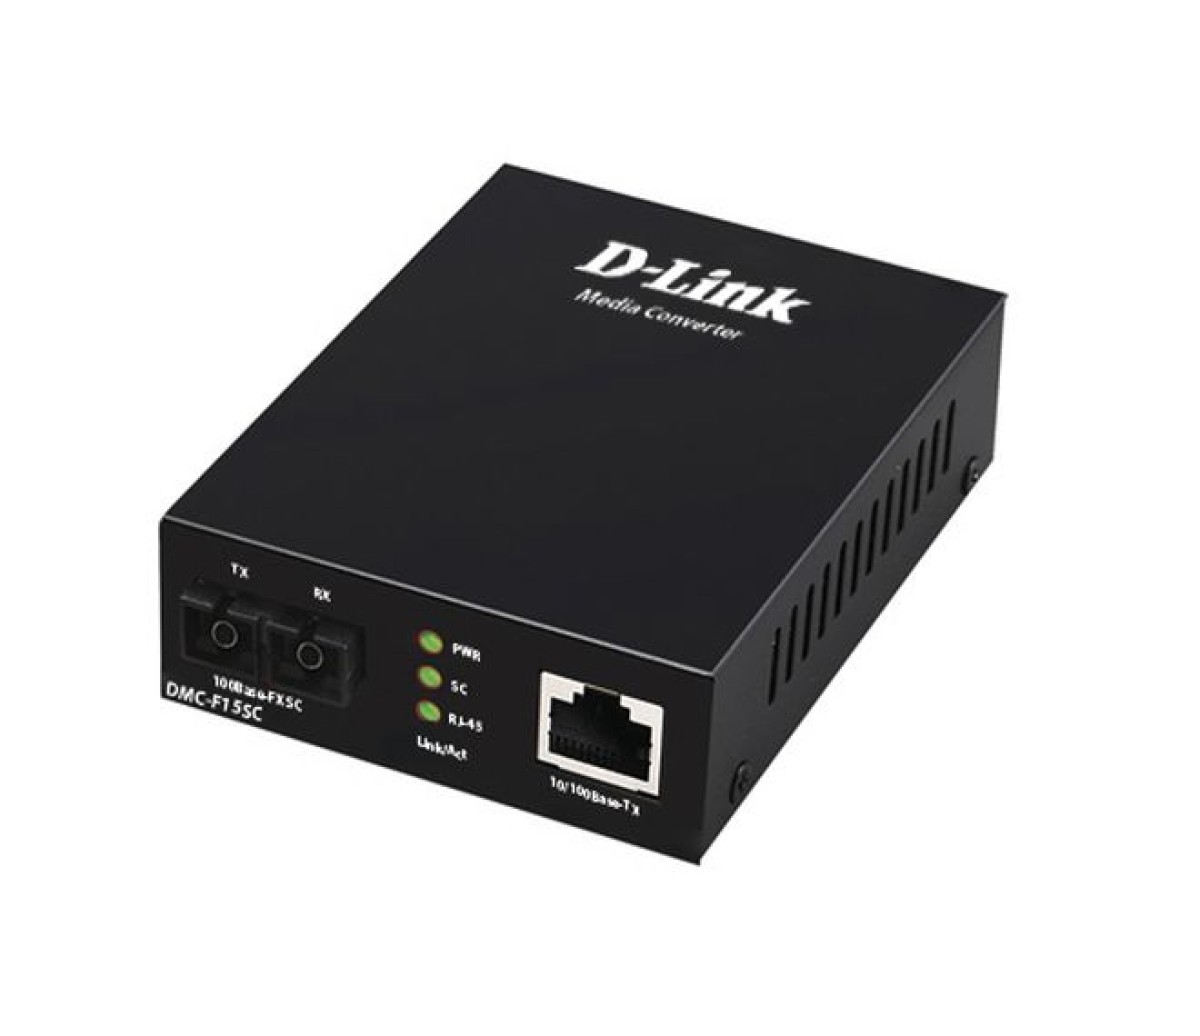 Медиаконвертер D-Link DMC-F15SC 256_221.jpg